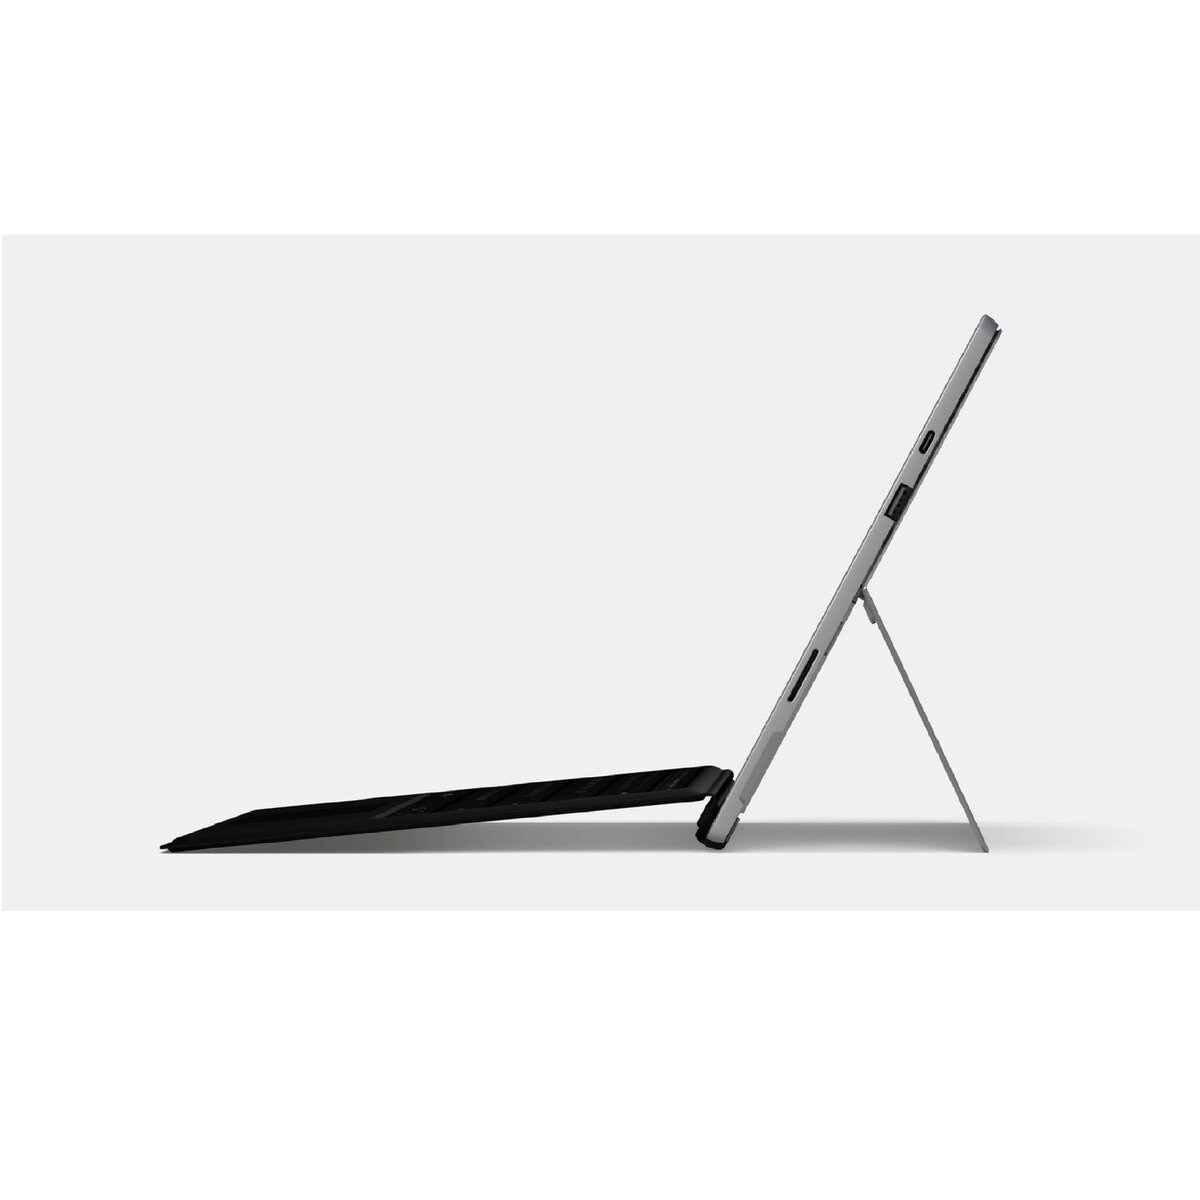 Surface Pro 7 本体のみ